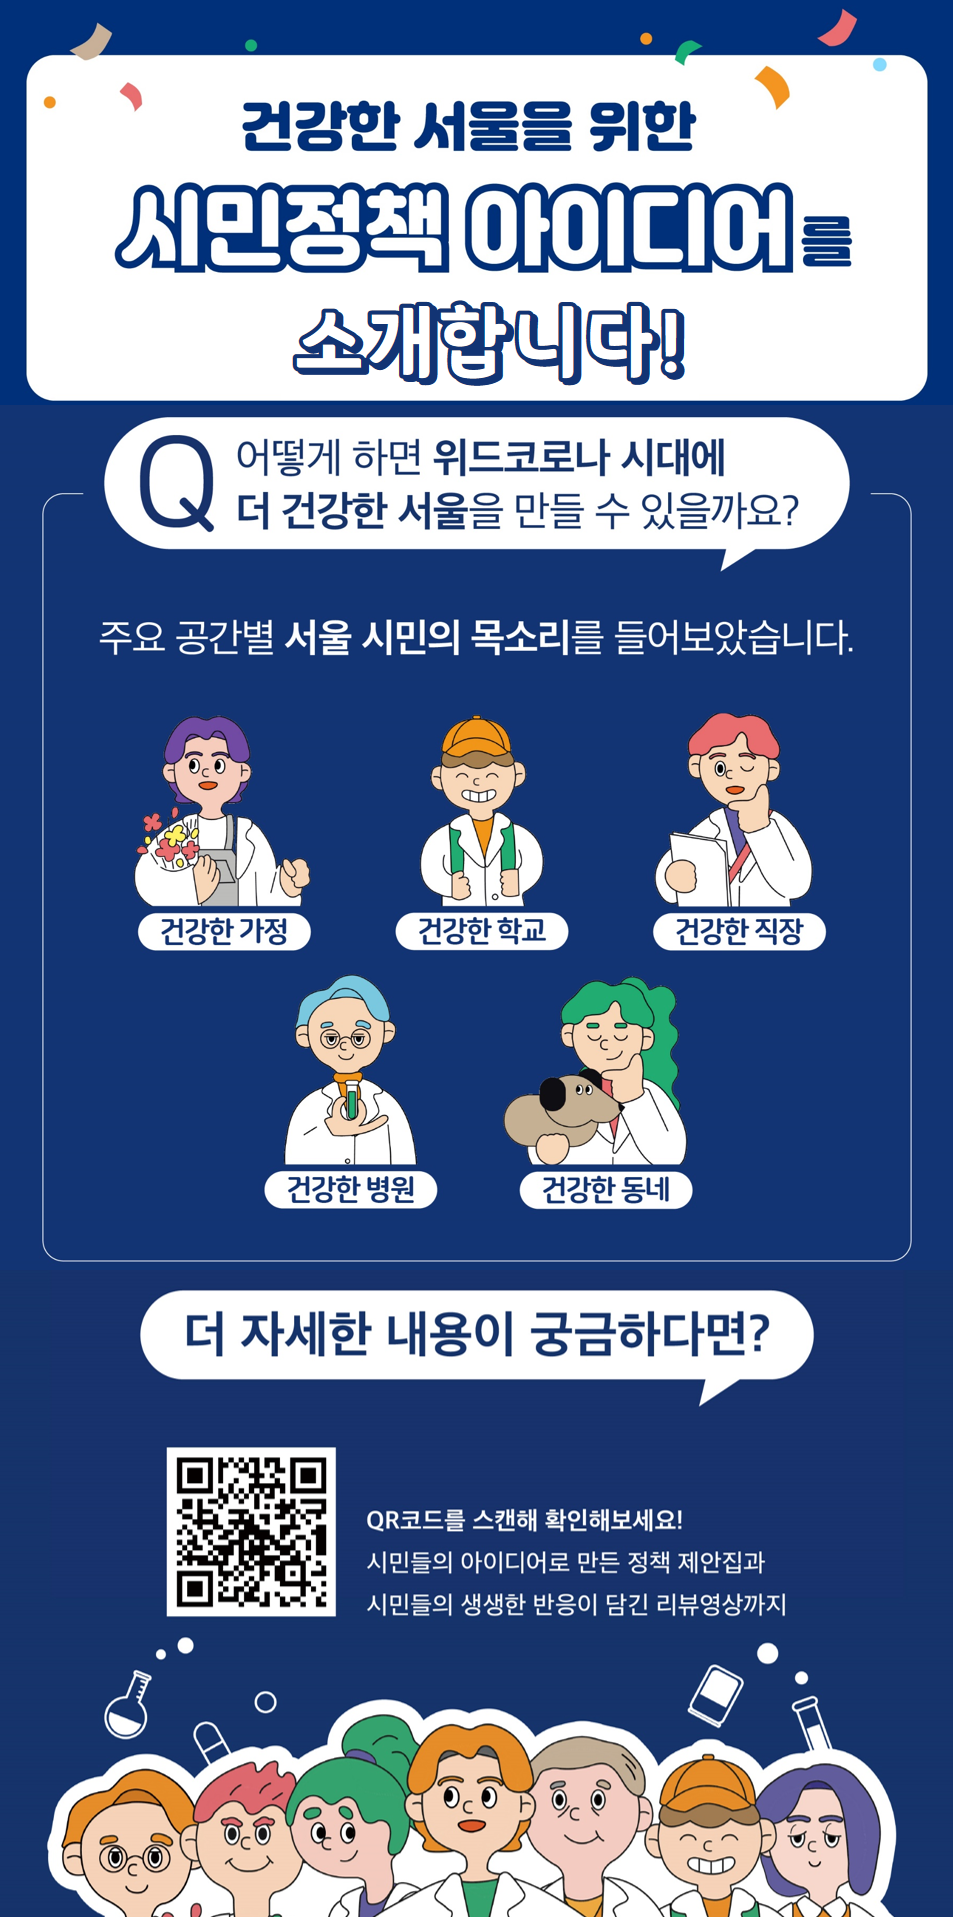 건강한 서울을 위한 시민정책 아이디어를 소개합니다! Q 어떻게 하면 위드코로나 시대에 더 건강한 서울을 만들 수 있을까요? 주요 공간별 서울 시민의 목소리를 들어보았습니다. 건강한 가정, 건강한 학교, 건강한 직장, 건강한 병원, 건강한 동네, 더 자세한 내용이 궁금하다면? QR코드르 스캔해 확인해보세요! 시민들의 아이디어로 만든 정책 제안집과 시민들의 생생한 반응이 담긴 리뷰영상까지